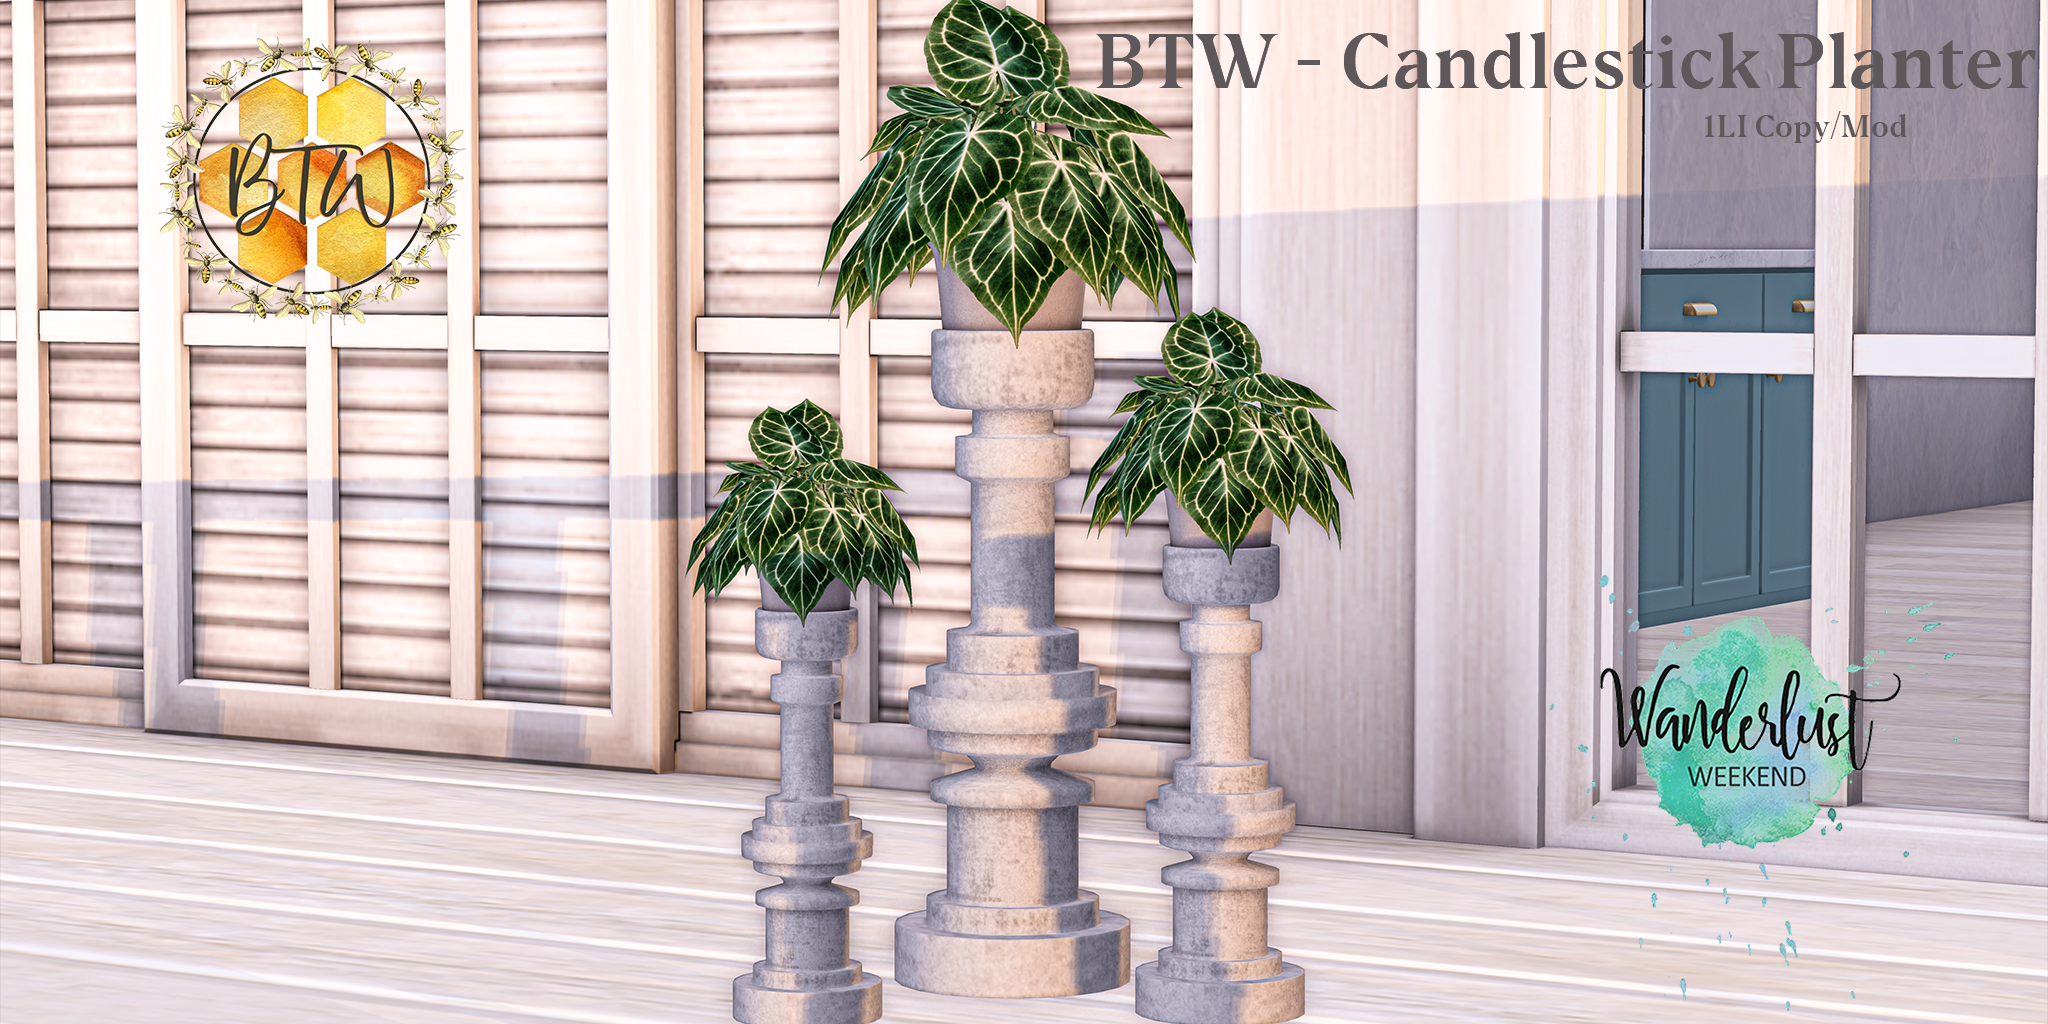 BTW – Candlestick Planter